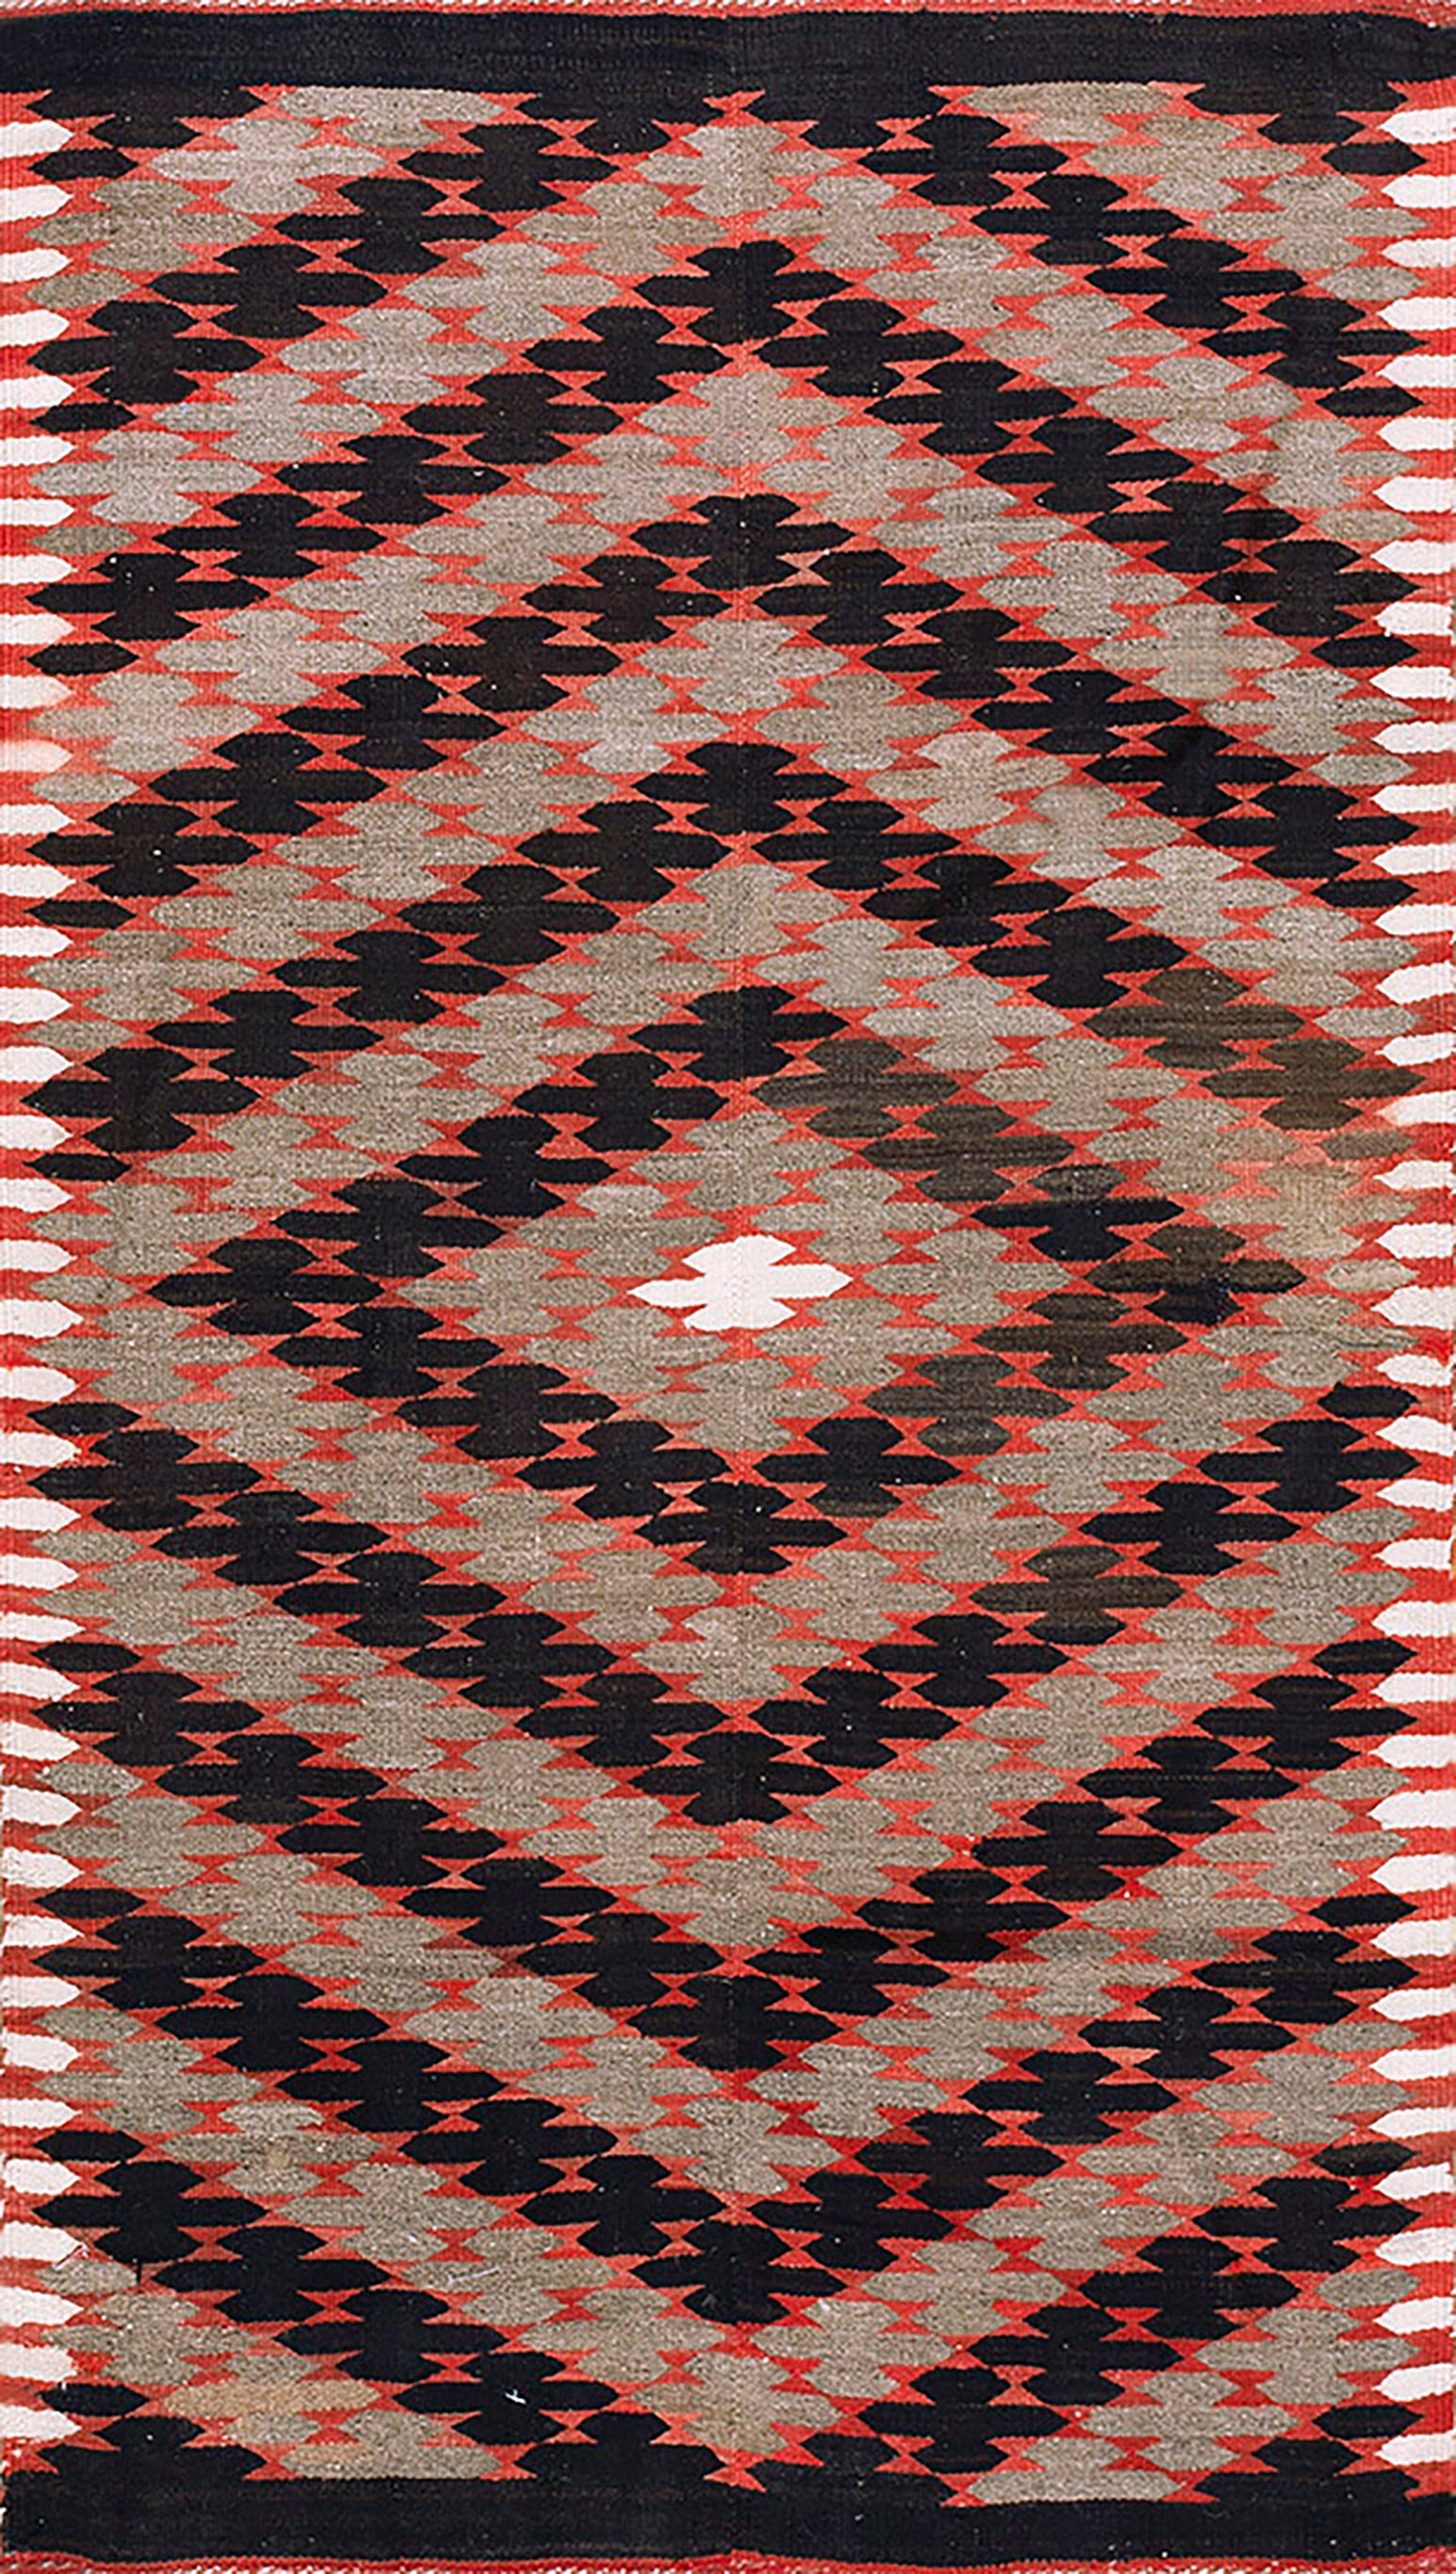 Early 20th Century Navajo Rio Grande Carpet ( 4'6" x 7'8" - 137 x 234 ) For Sale